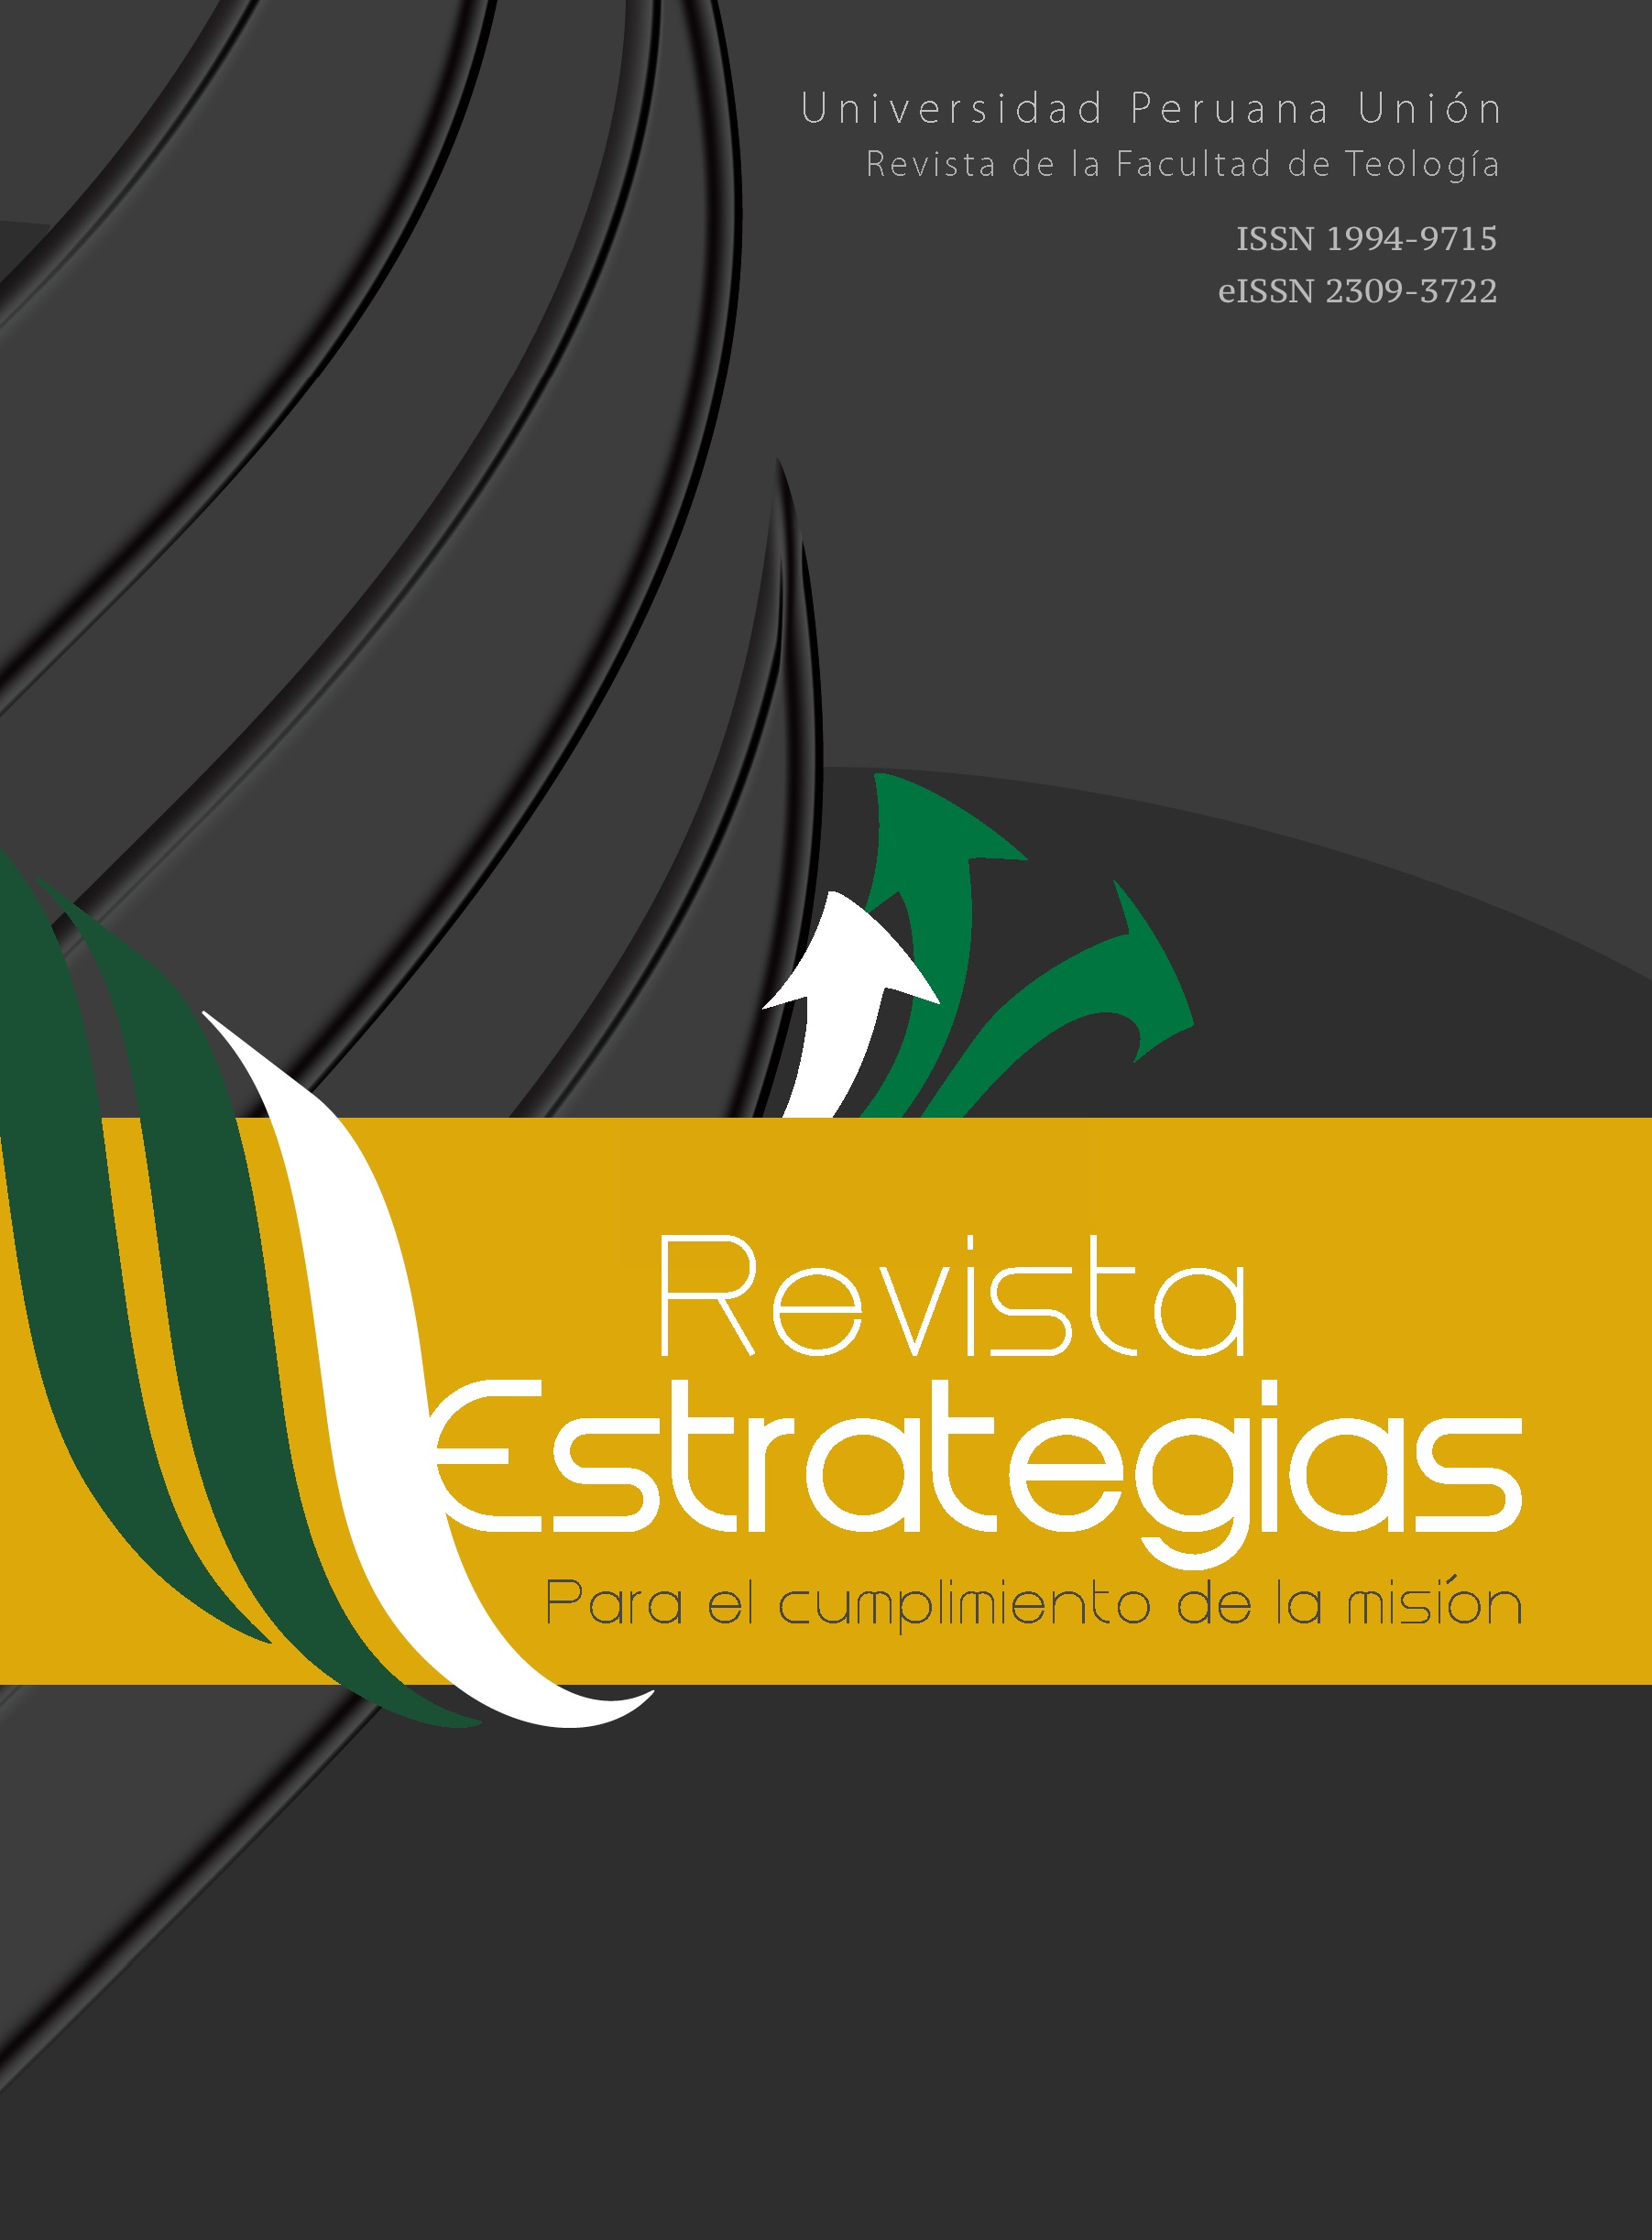 					Ver Vol. 18 Núm. 1-2 (2020): Revista Estrategias para el Cumplimiento de la Misión (RECM)
				